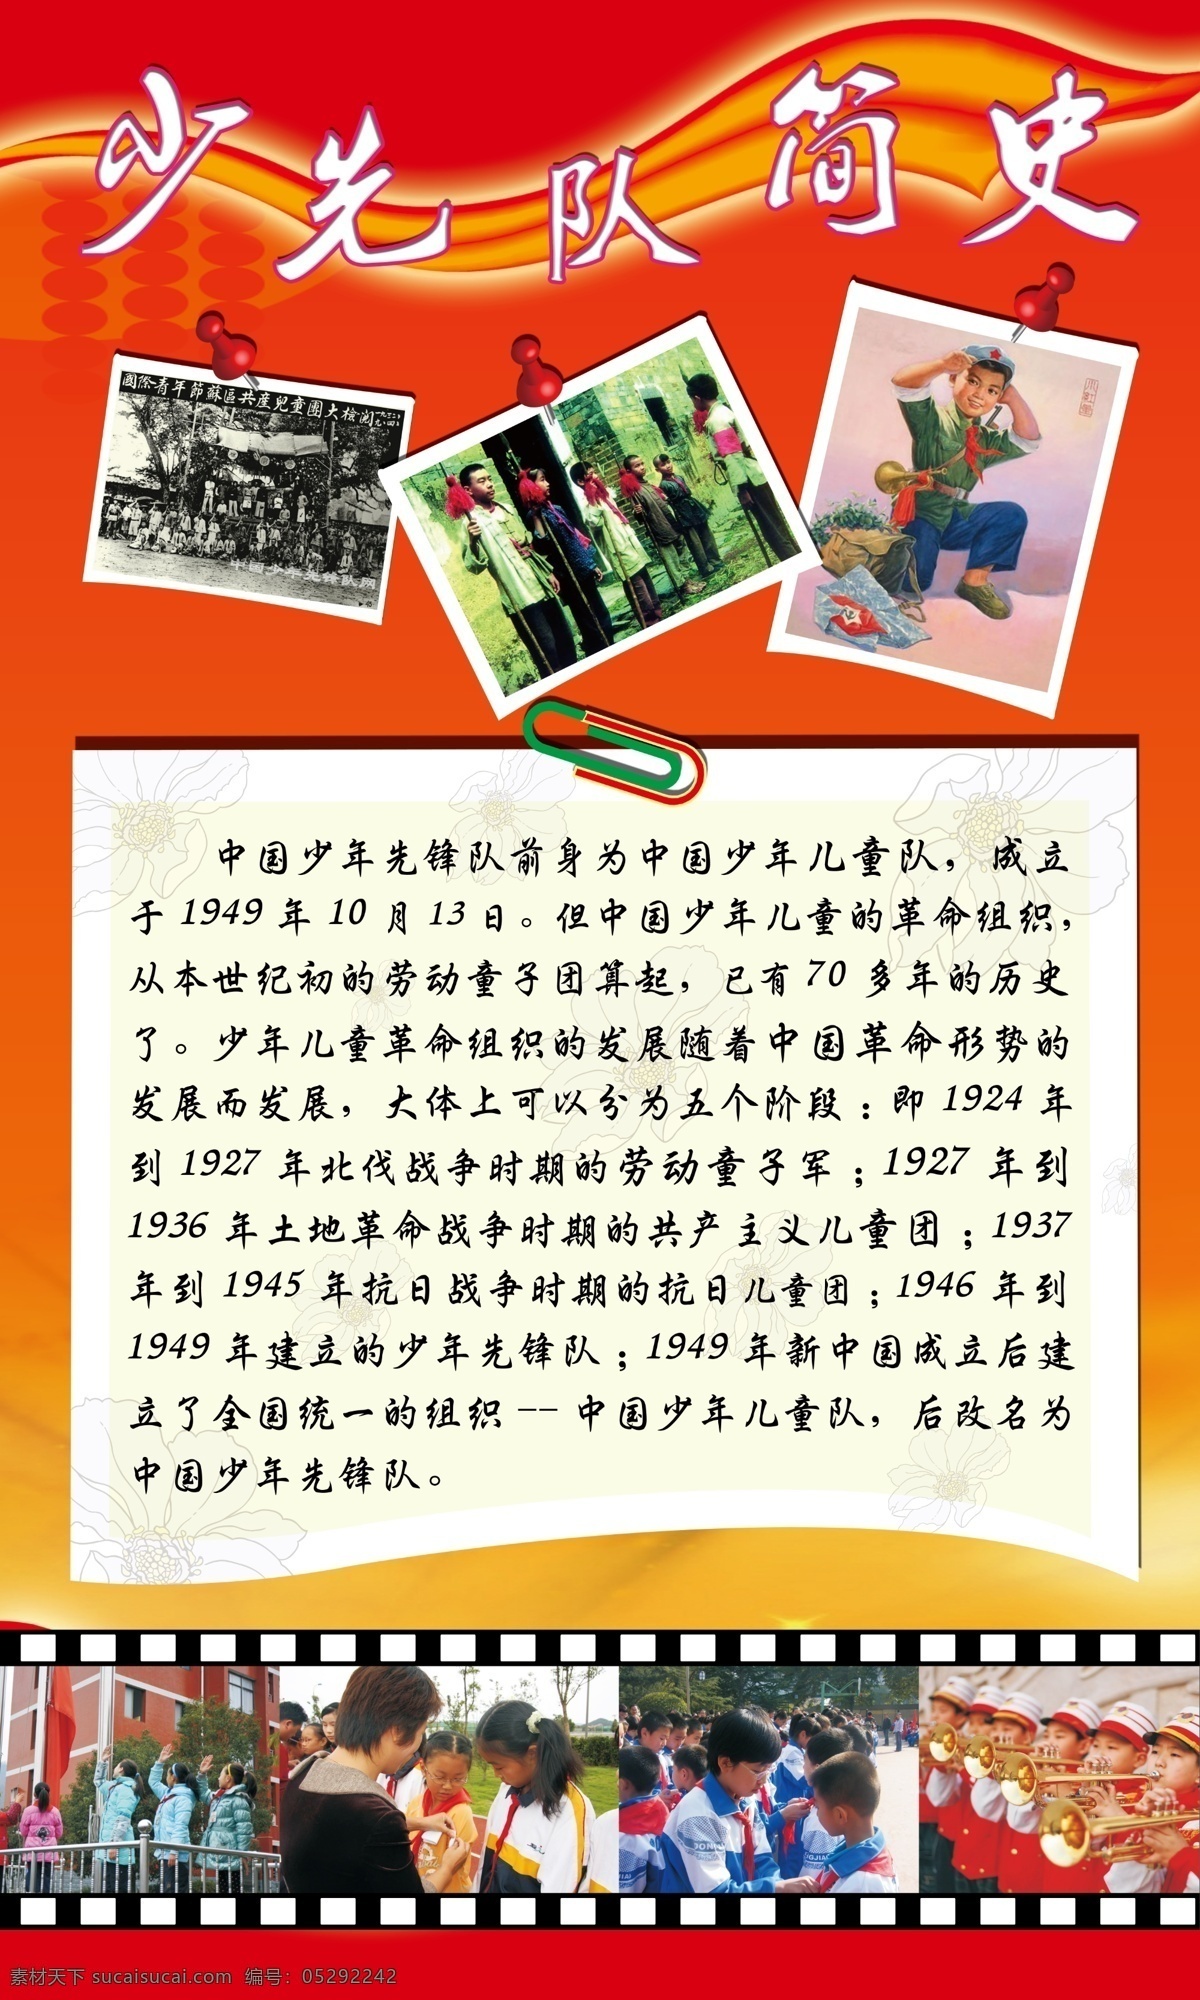 少先队 简史 展板 中国 简吏 照片 胶片 1949年 展板模板 广告设计模板 源文件